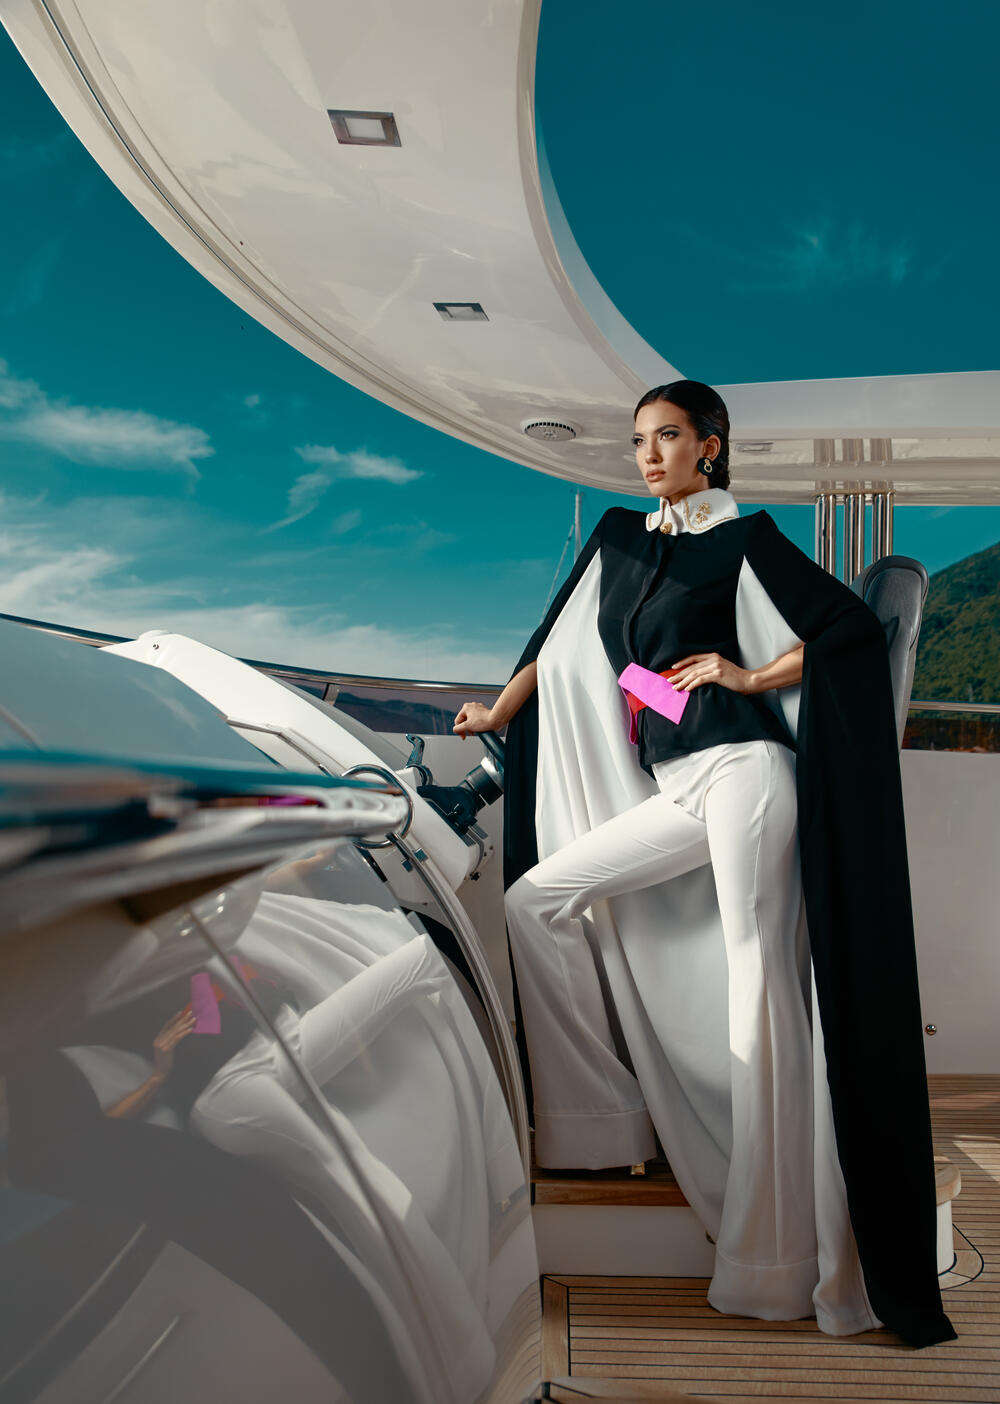 Sa snimanja za časopis Luxury Collection, model s kotorske Smotre mode